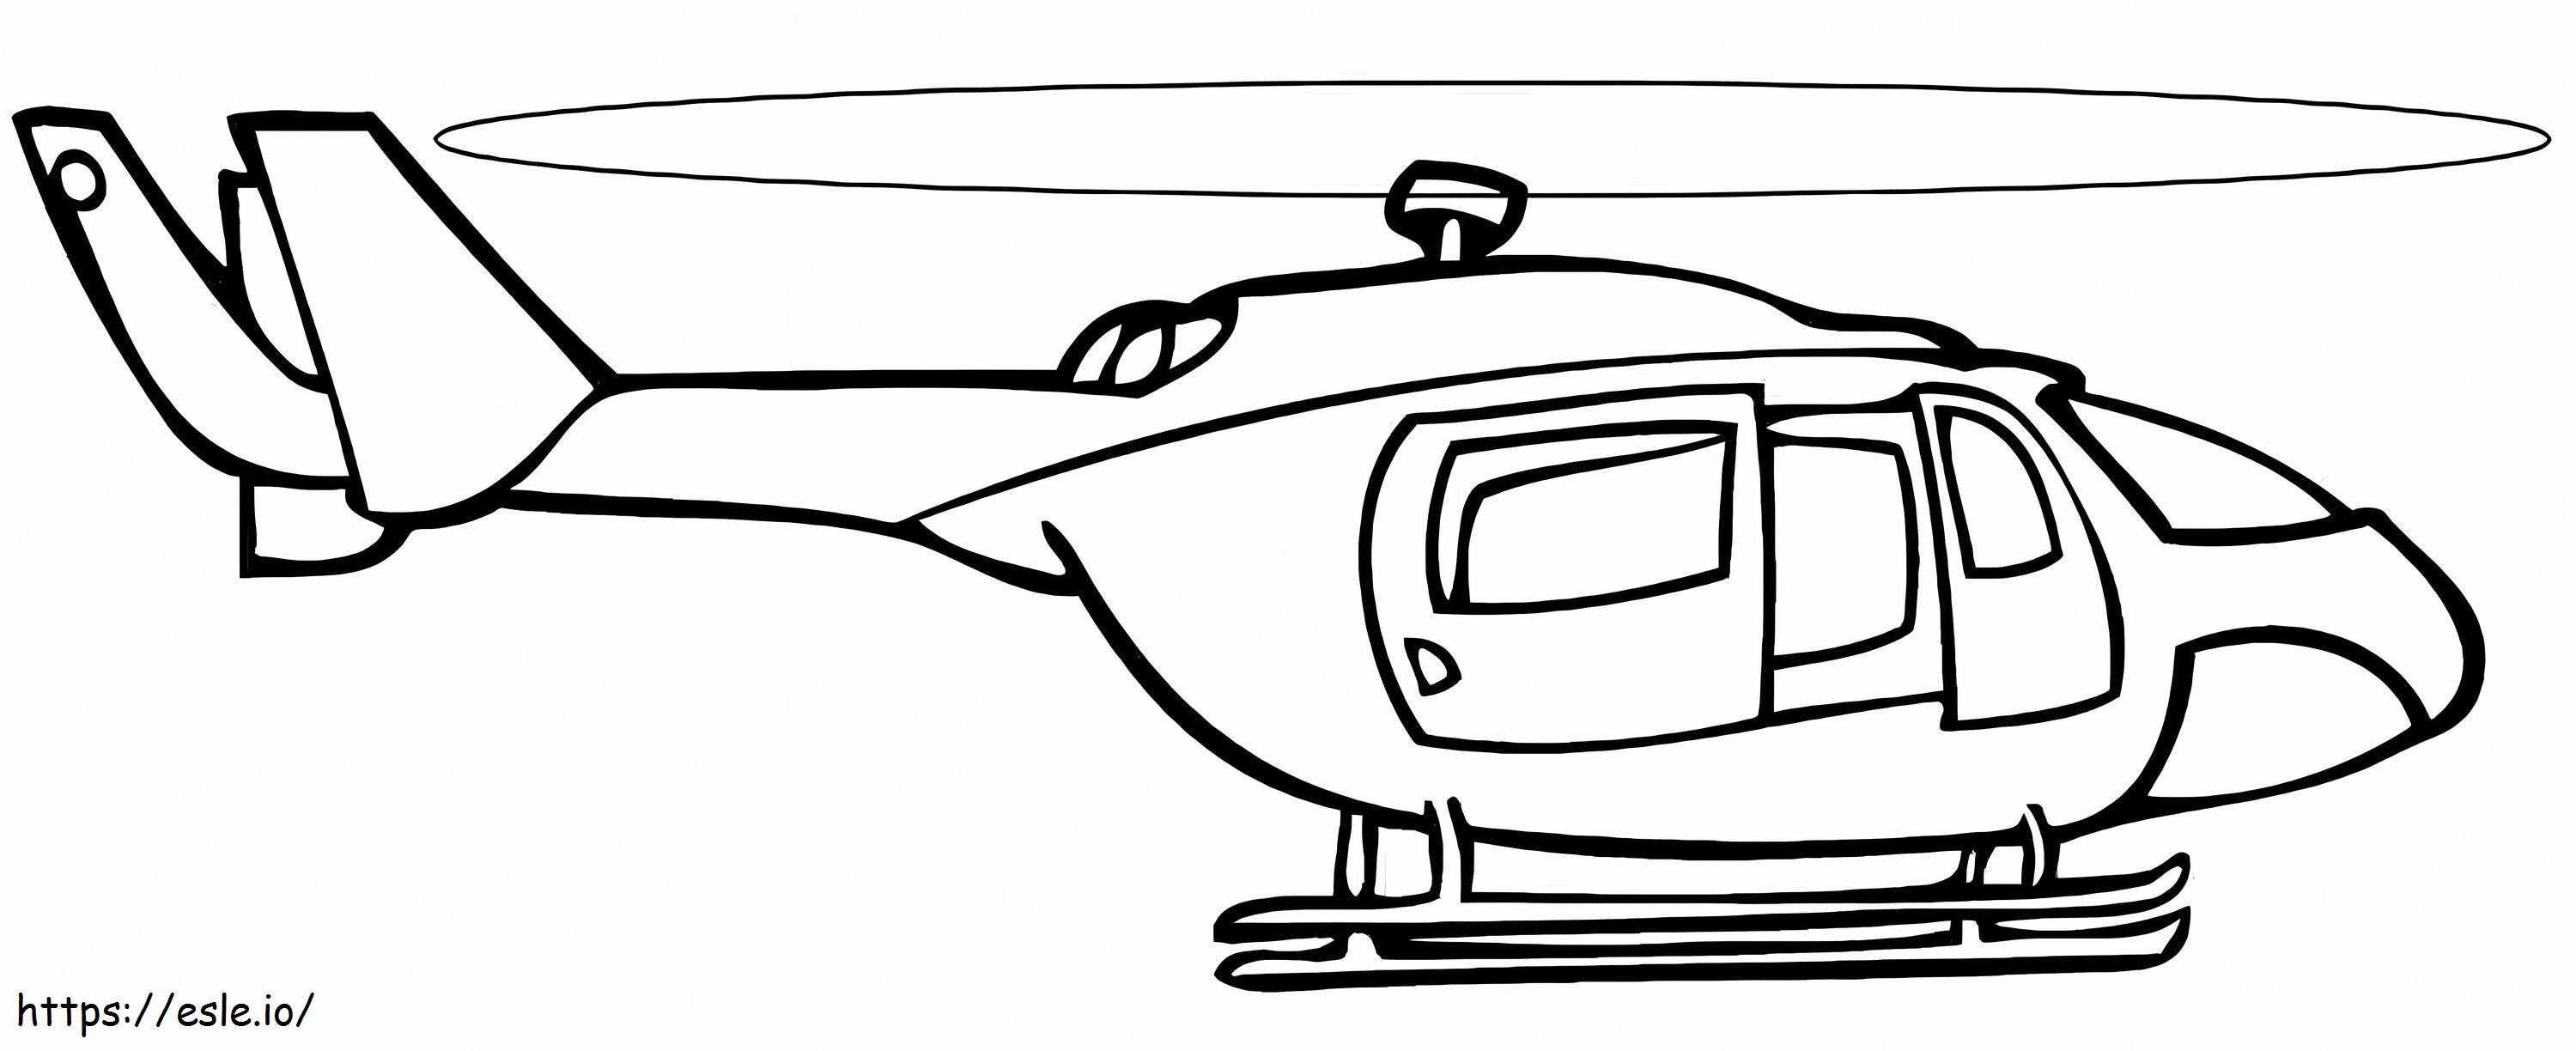 Coloriage Hélicoptère parfait à imprimer dessin